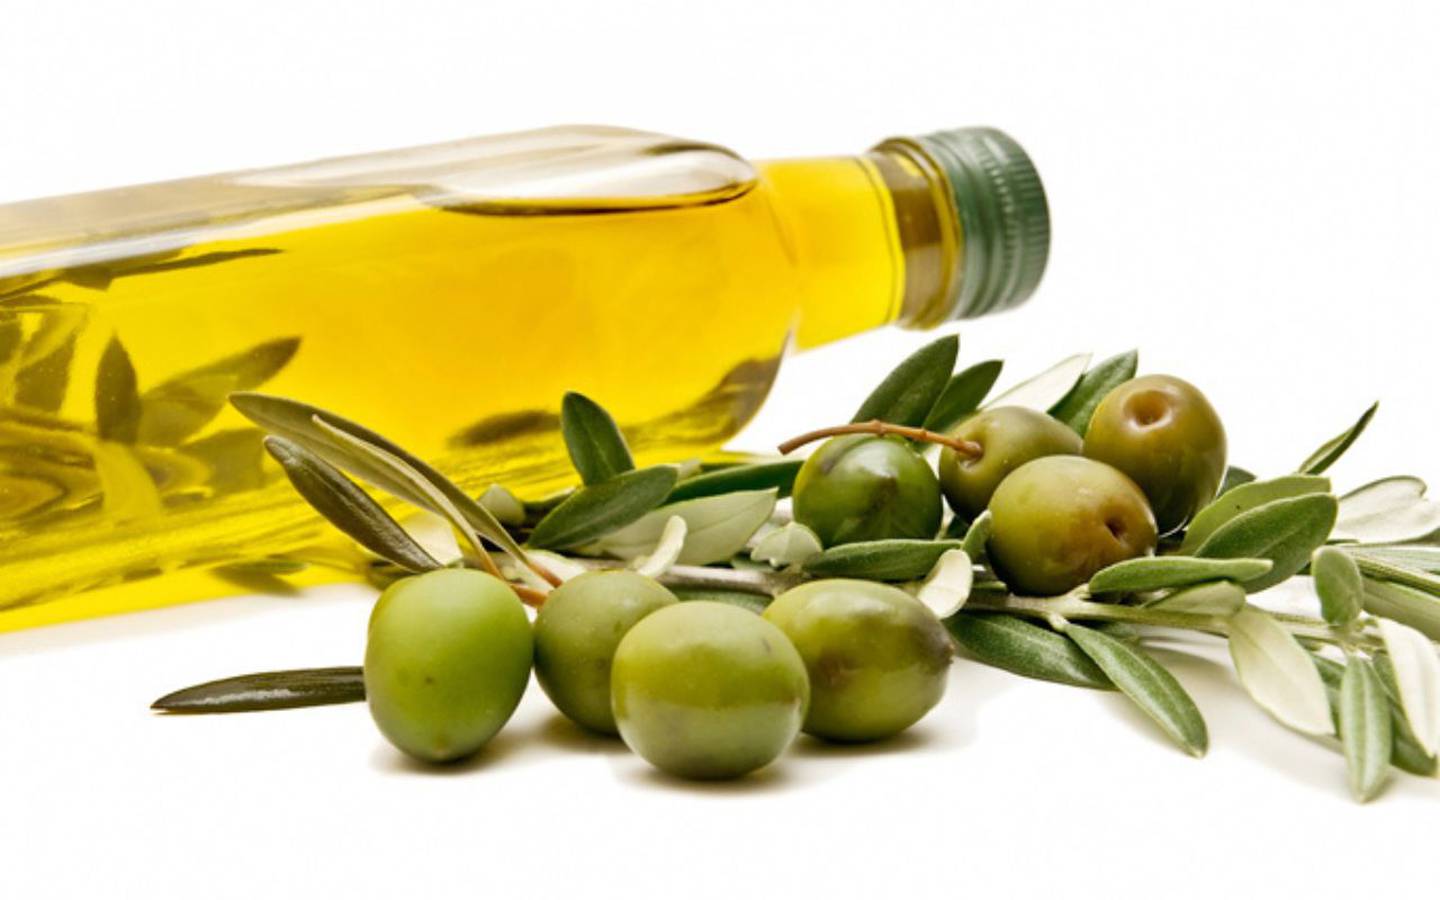 La baja en las reservas de aceite de oliva en Italia podría desestabilizar los precios en todo el mundo. ¡Prepárate para posibles aumentos en el costo del aceite de oliva! (Flickr)